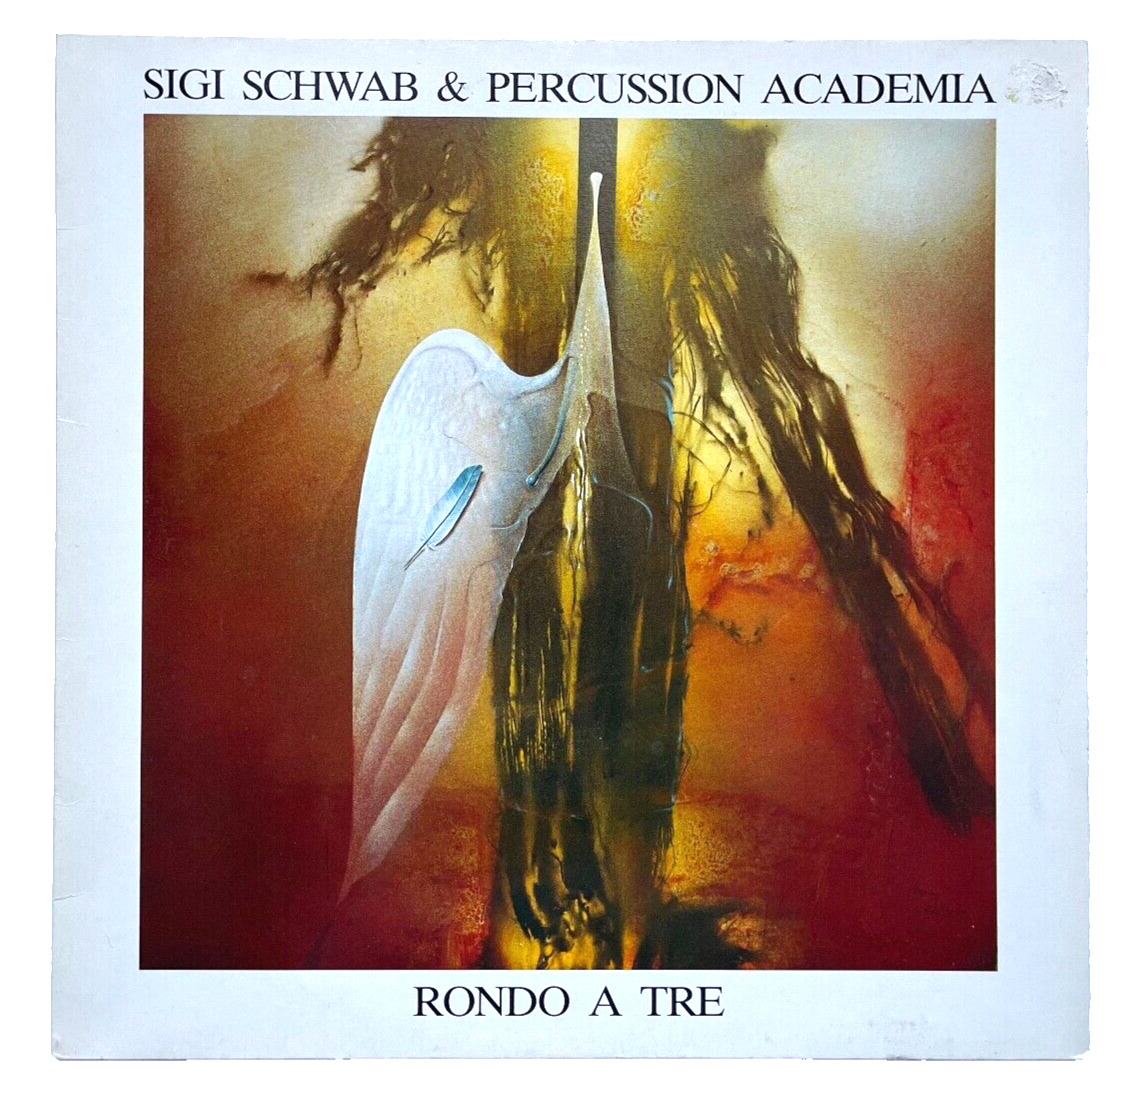 SIGI SCHWAB & PERCUSSION ACADEMIA - RONDO A TRE * VINYL LP * 1983 * FREE P&P UK